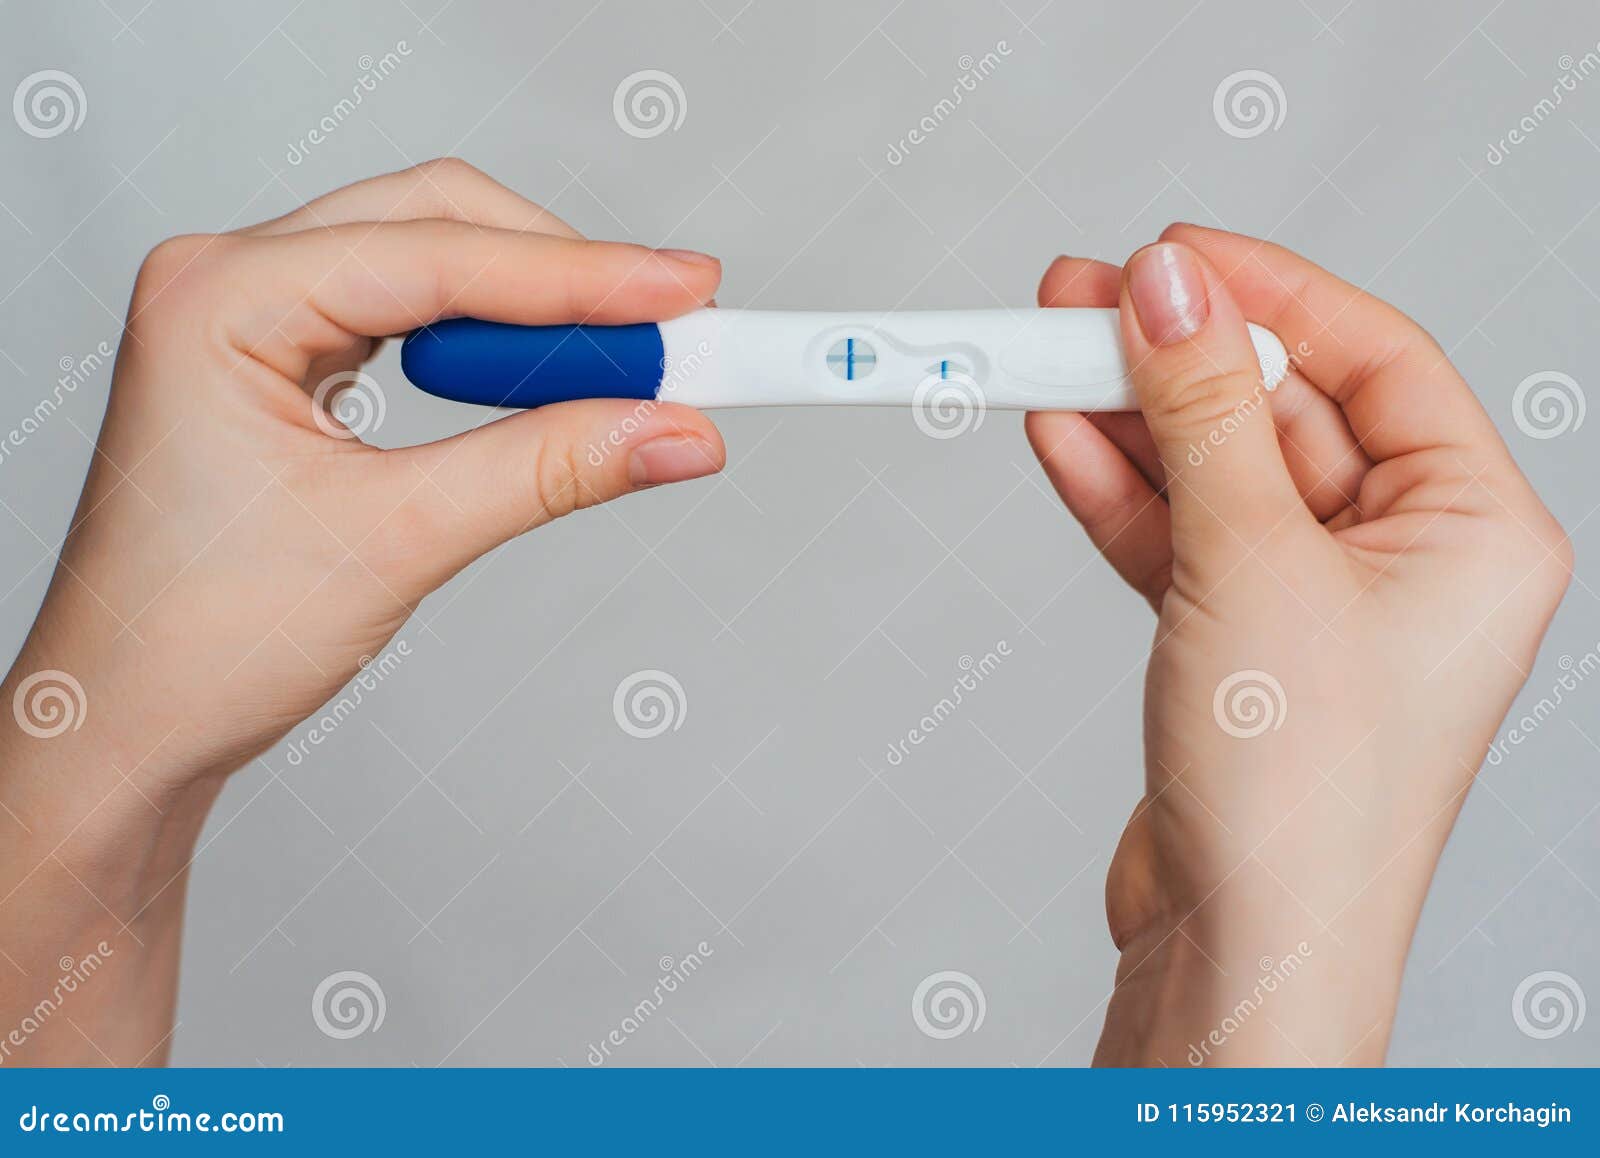 Фототест. Тест 2 полоски в руке. Рука с тестом на беременность. Девушка с тестом на беременность в руках. Тест на беременность в руке.